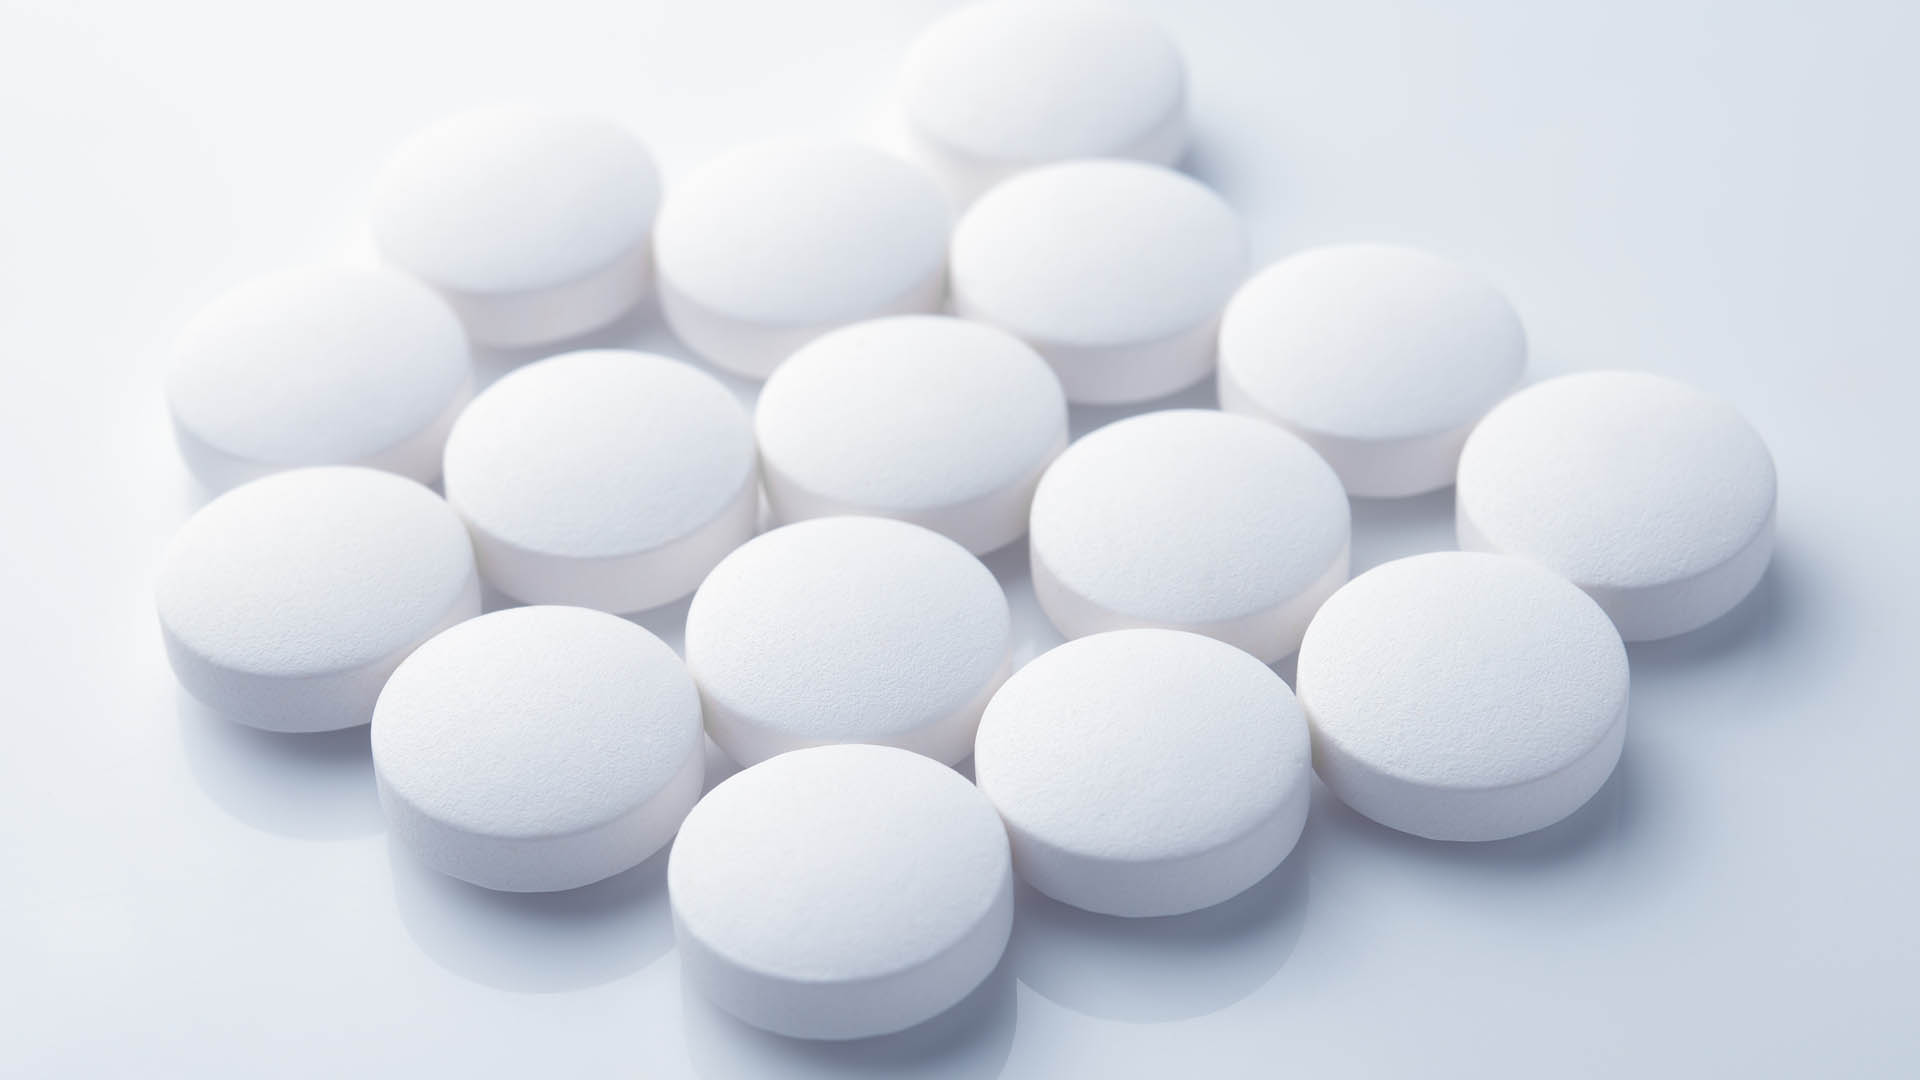 3.5 million amphetamine pills seized by Saudi authorities